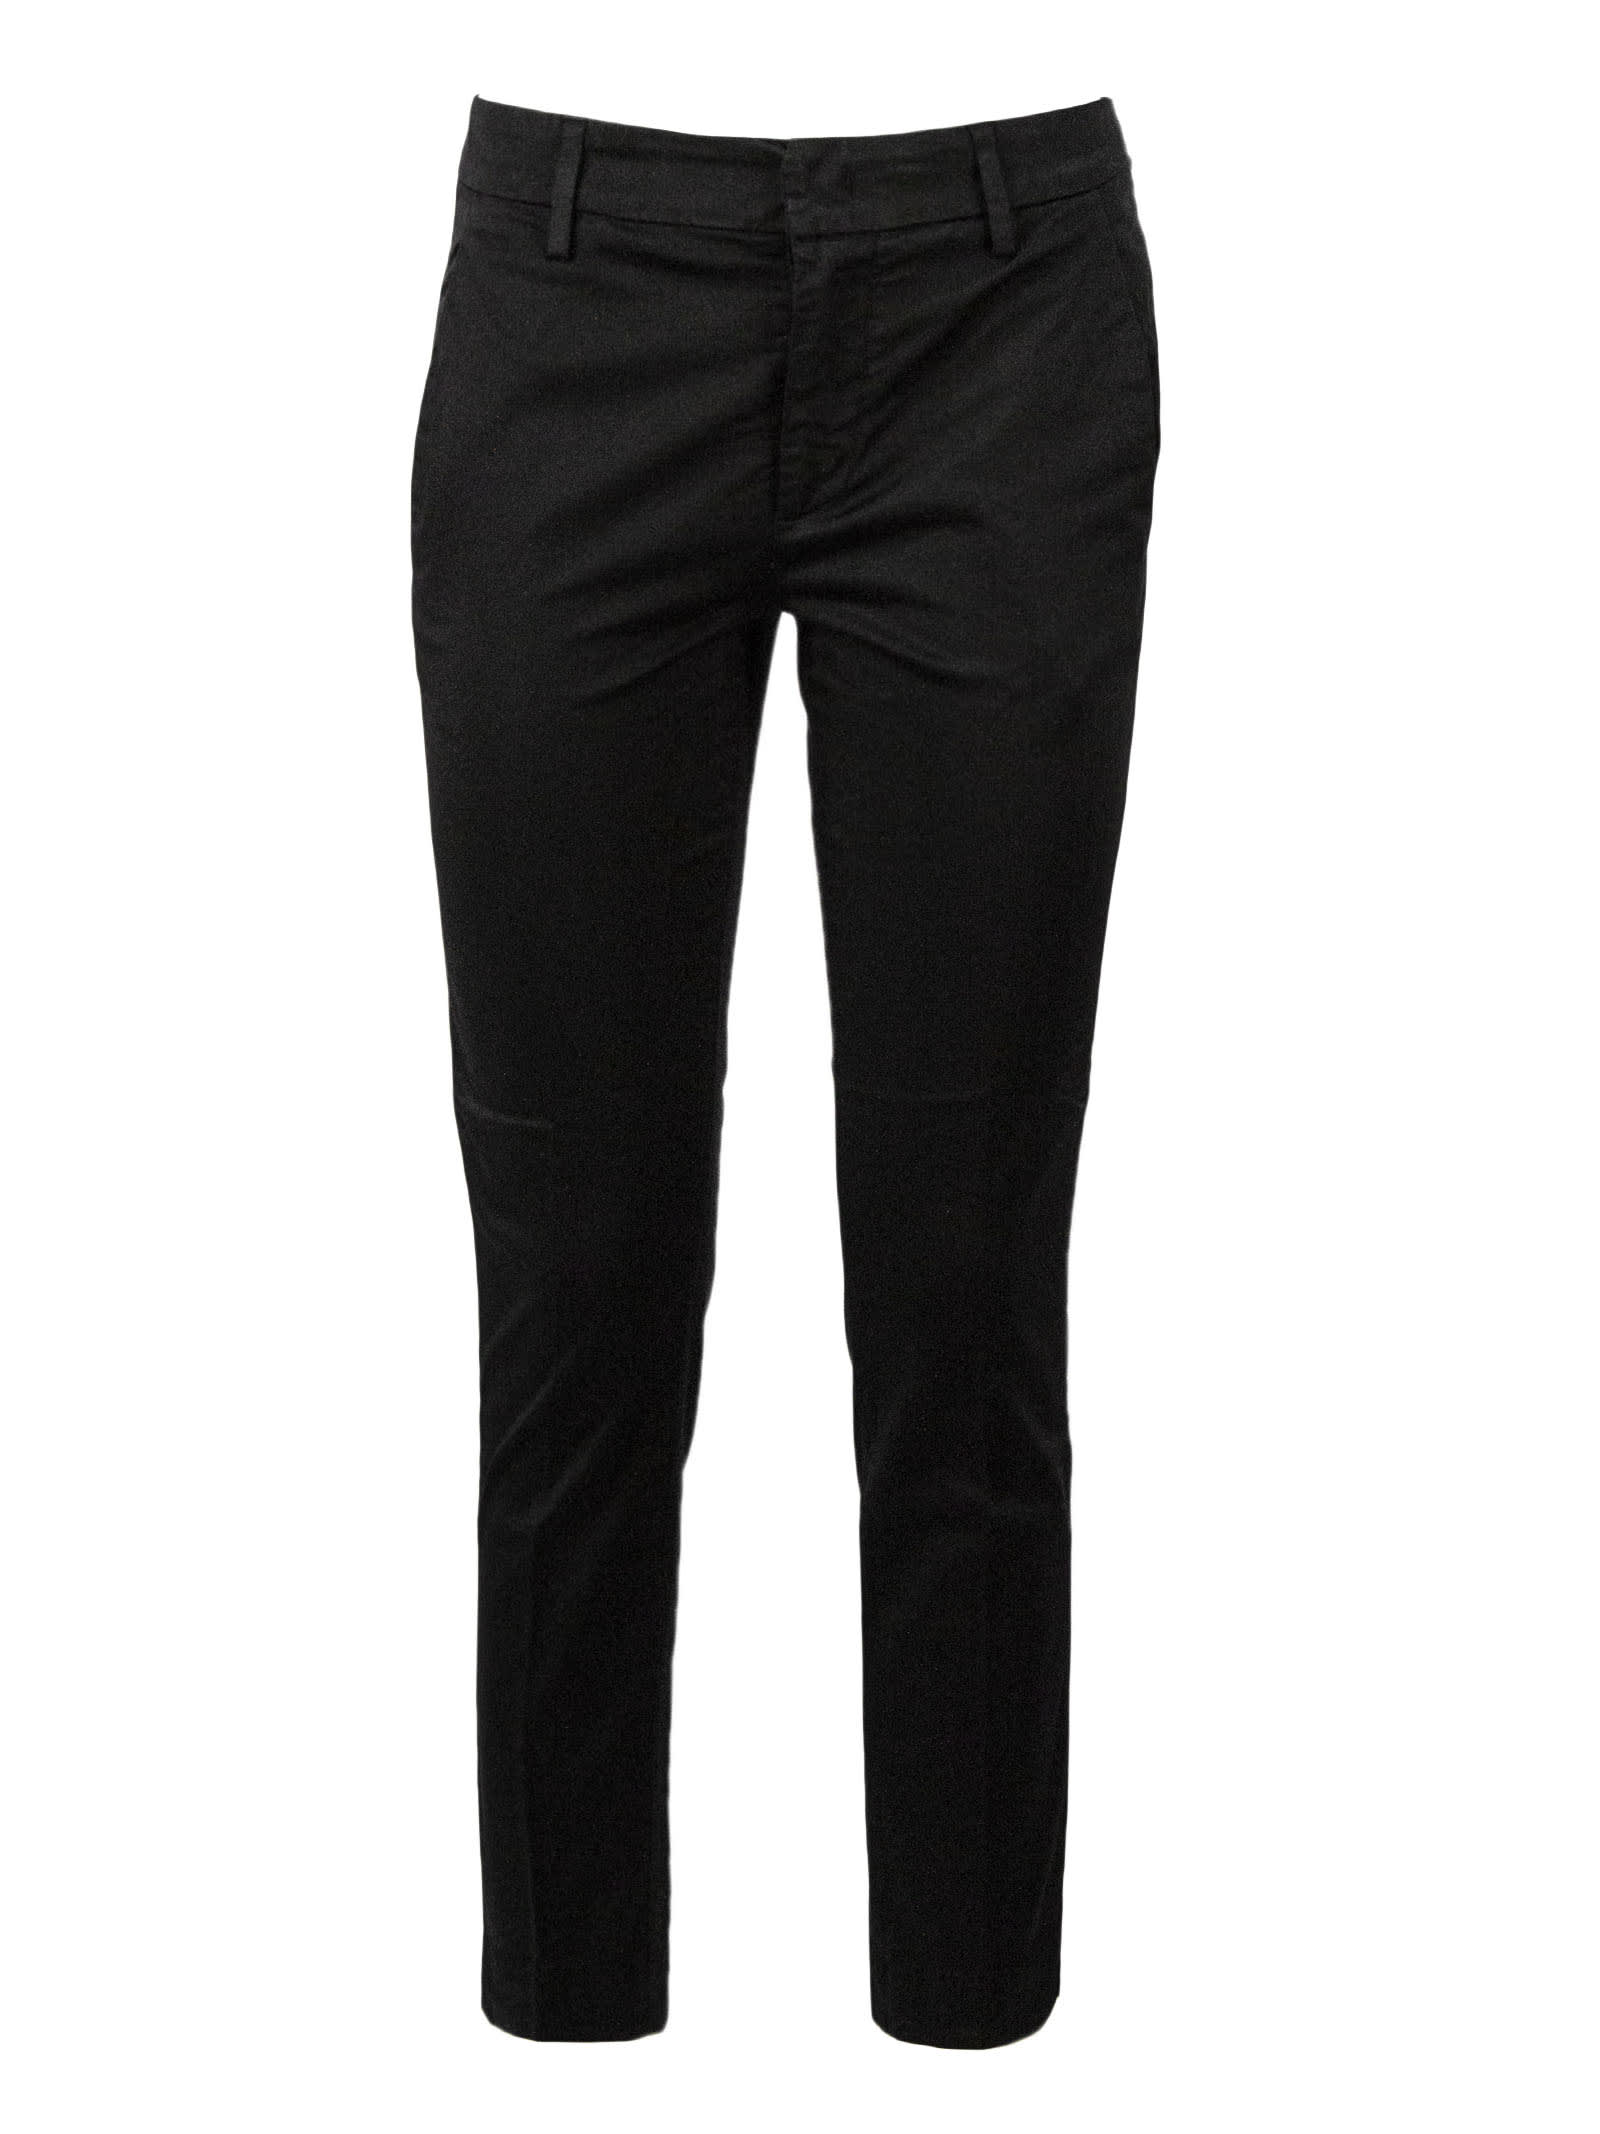 Dondup Black Cotton Linen Blend Trousers